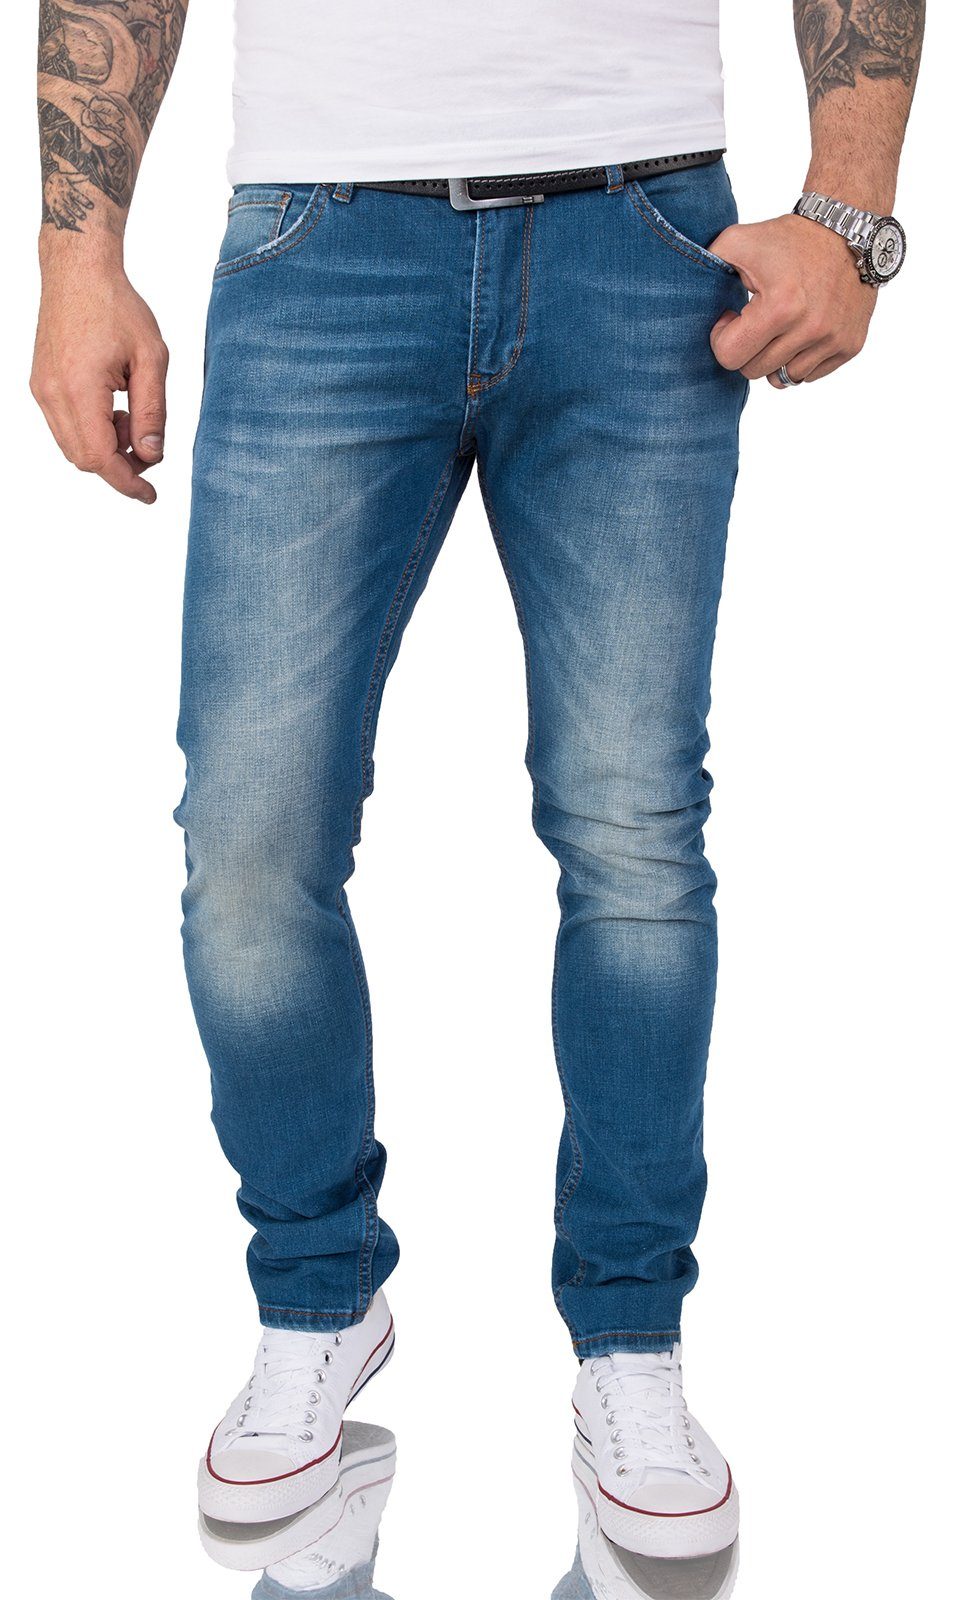 Gelverie Slim-fit-Jeans Herren Jeans Stonewashed Blau G-201